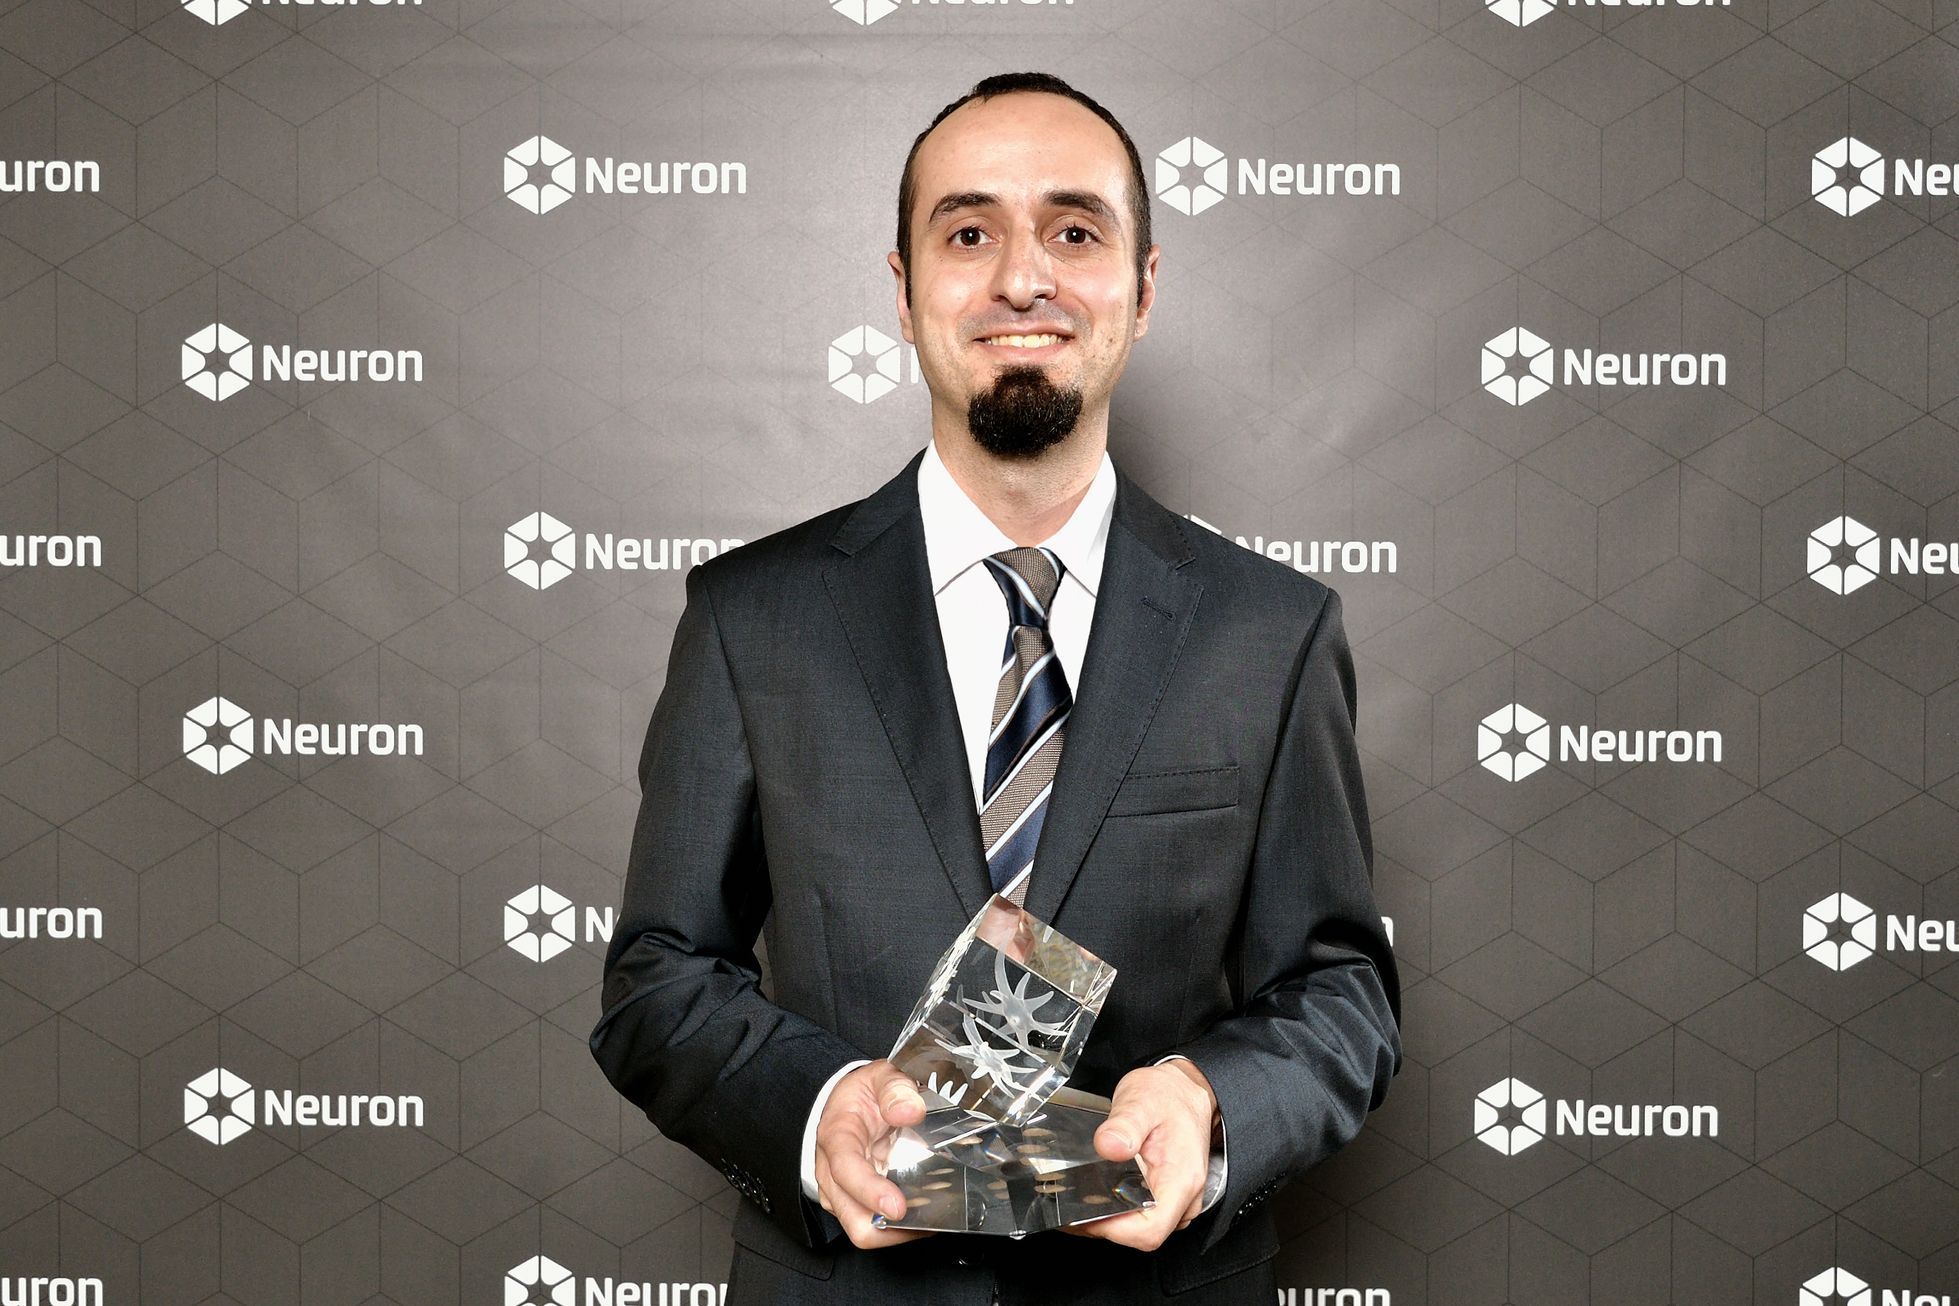 Ceny Neuron 2019 - matematik Vladimir Lotoreichik